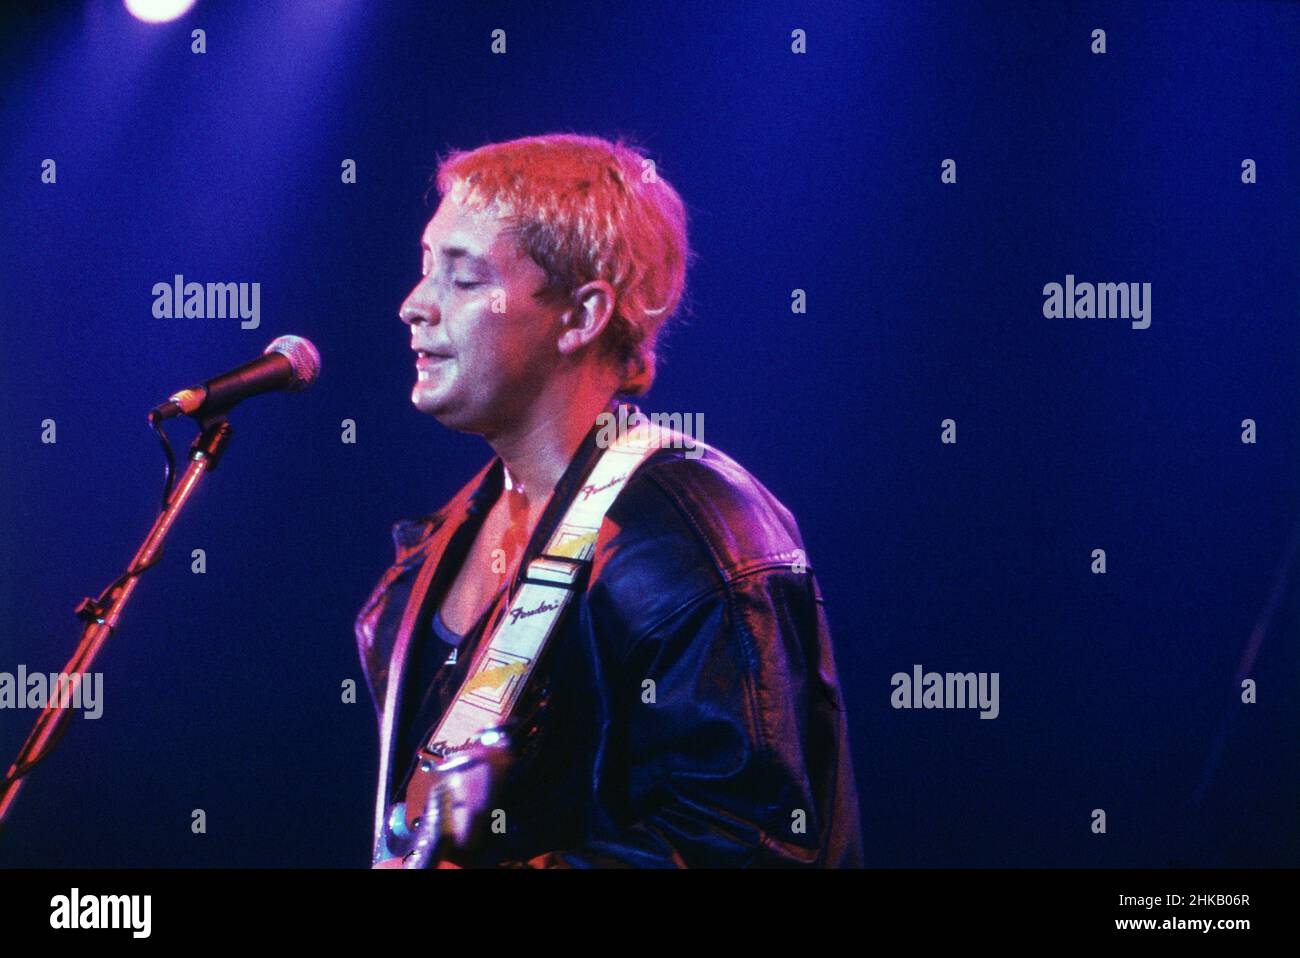 Chris Rea, britischer Sänger, Komponist und Gitarrist, bein einem Auftritt, Deutschland 1988. Stock Photo